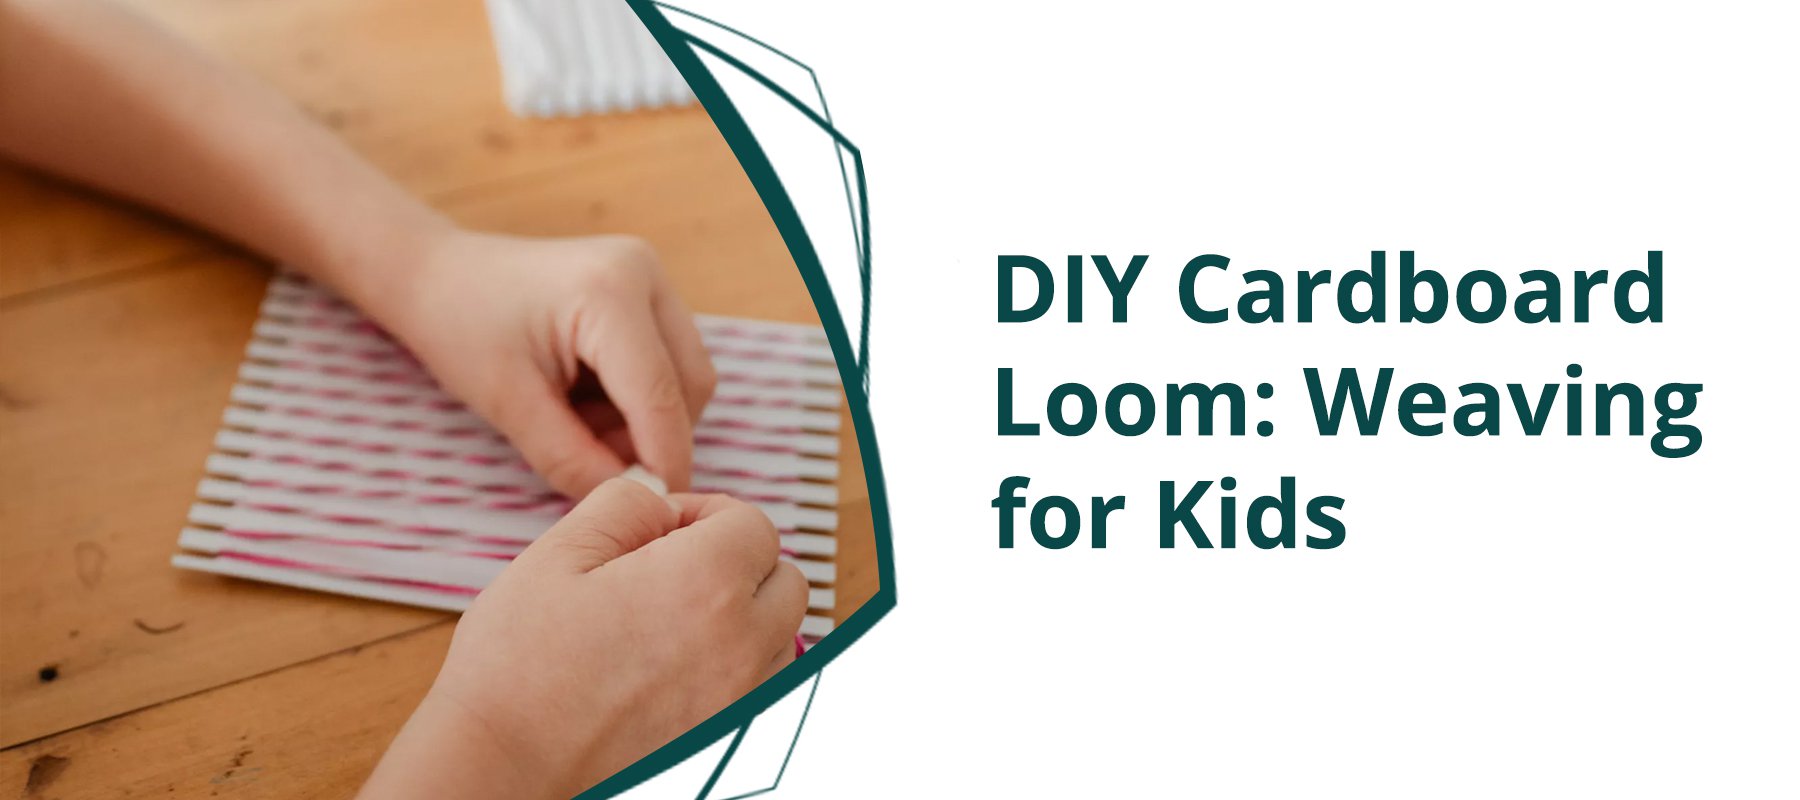 DIY Cardboard Loom: Weaving for Kids